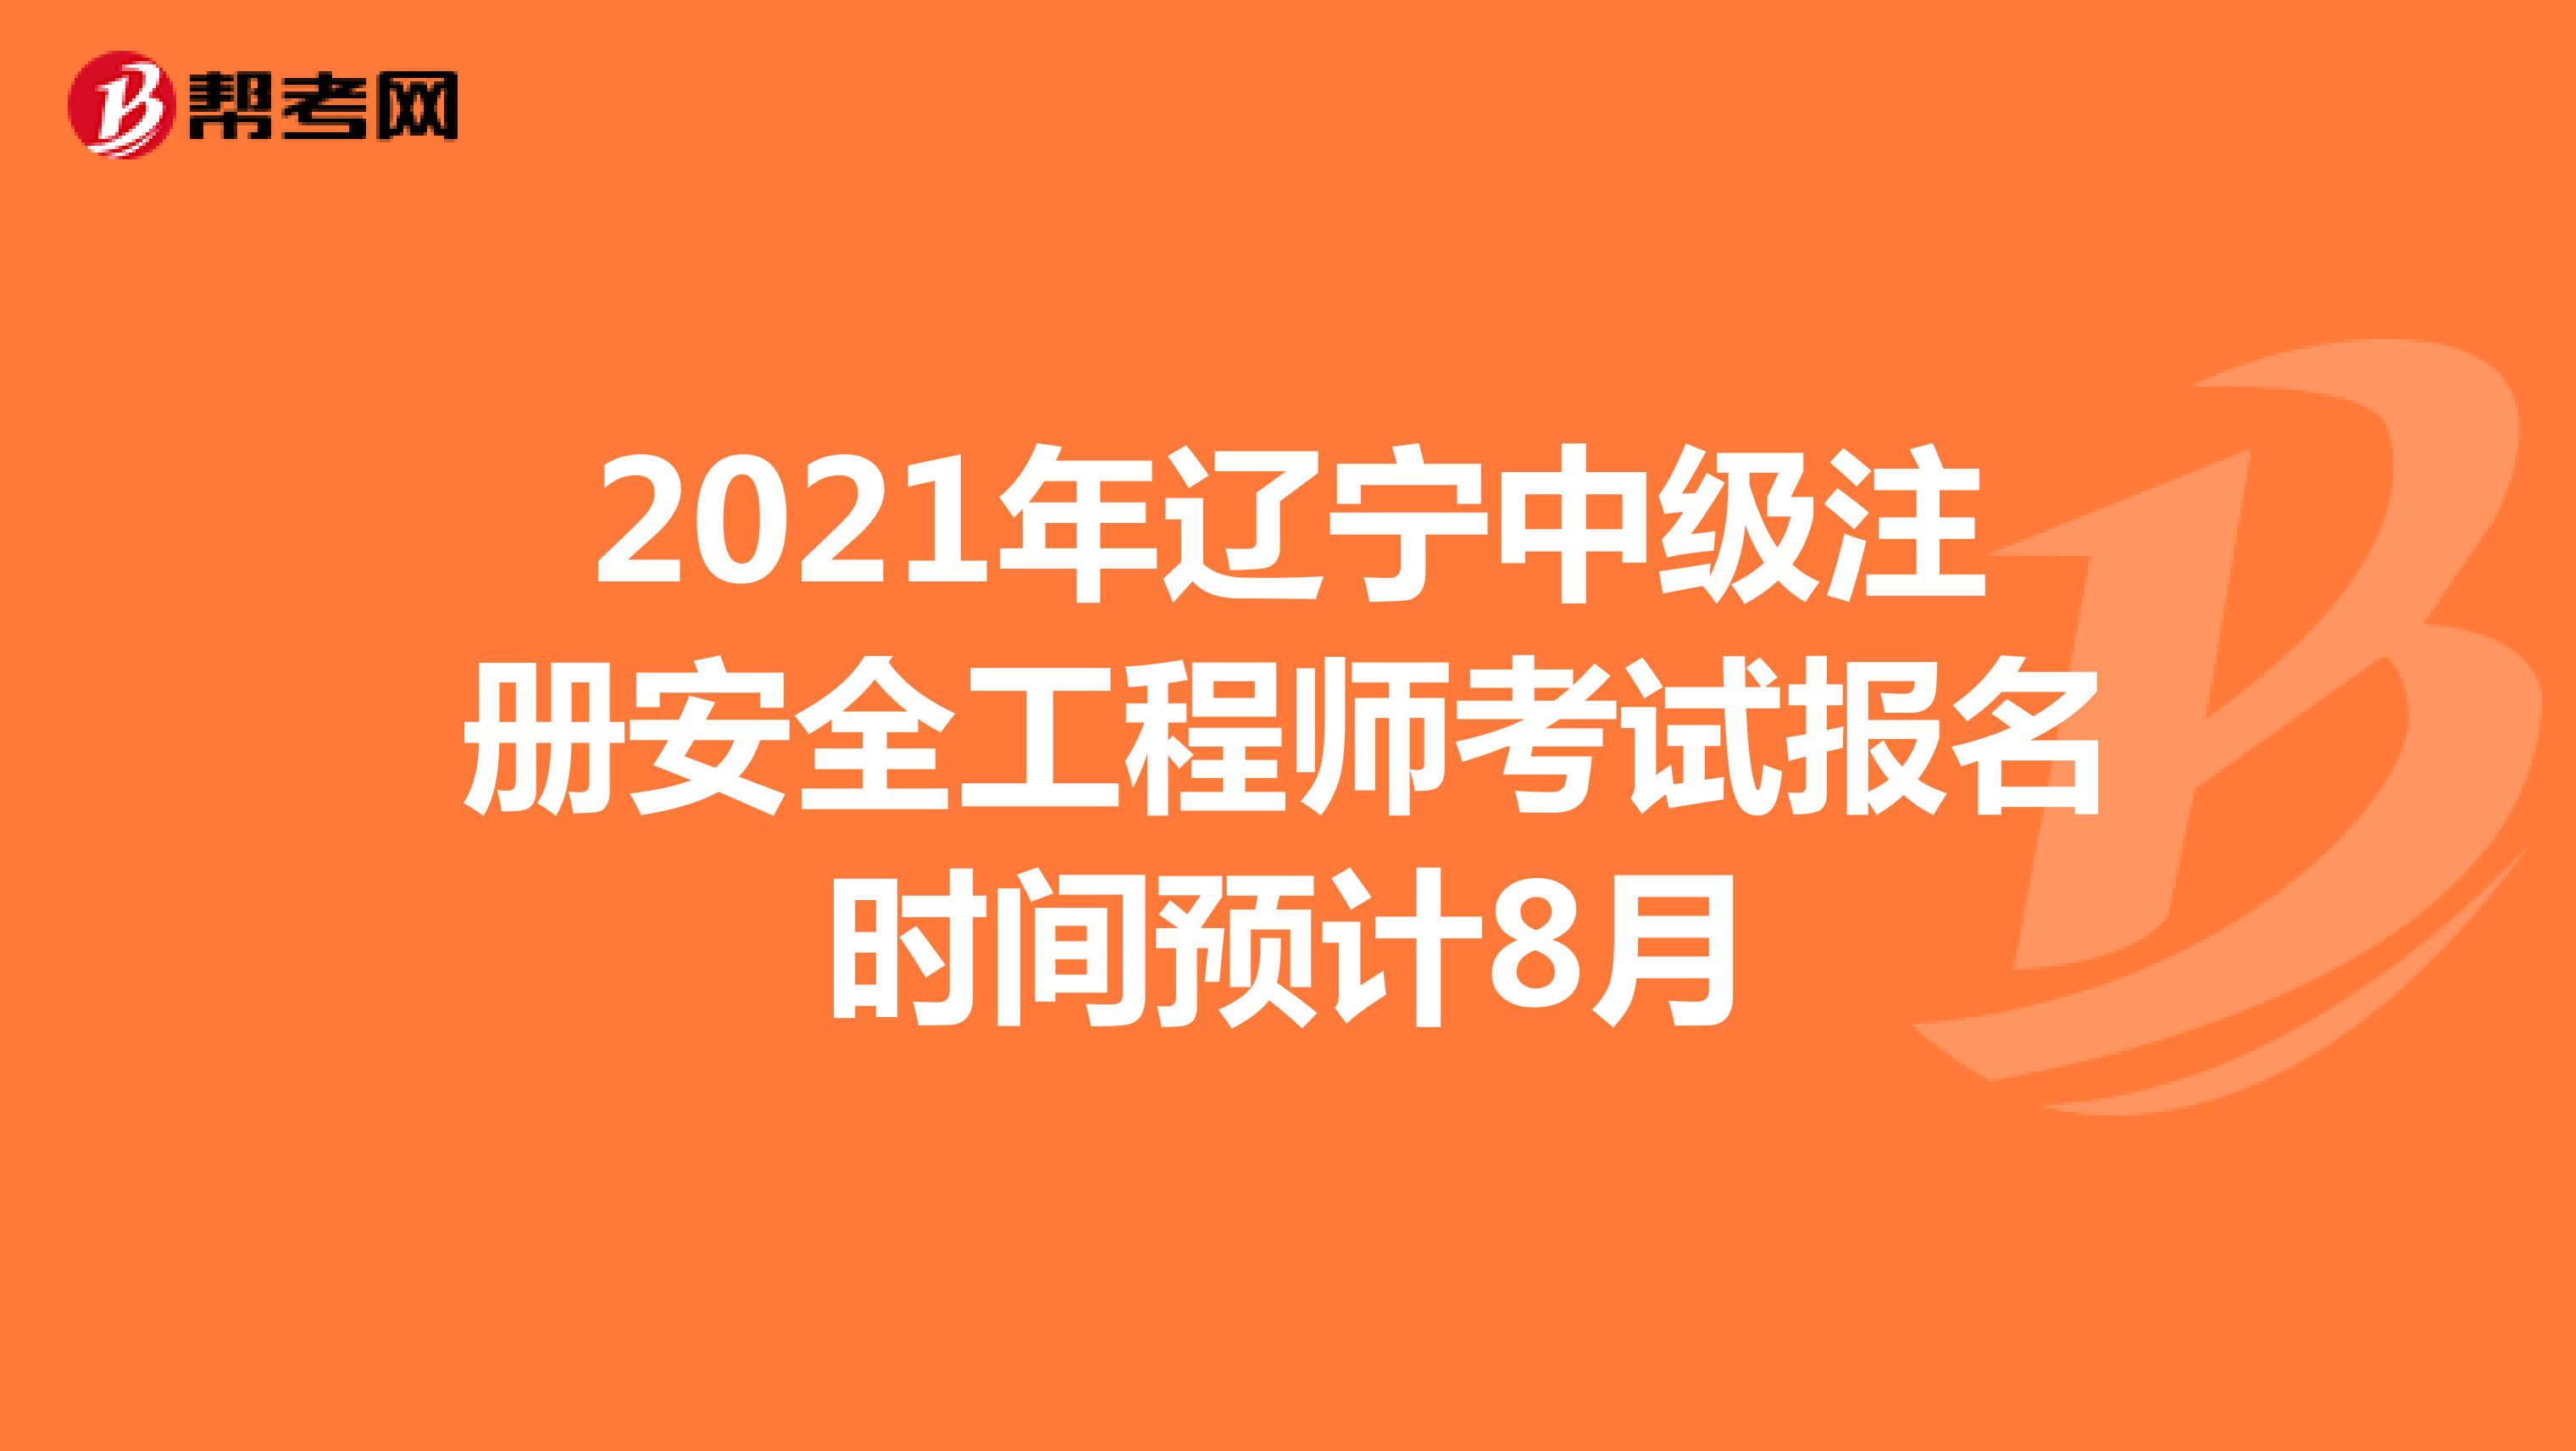 2021年辽宁中级注册安全工程师考试报名时间预计8月